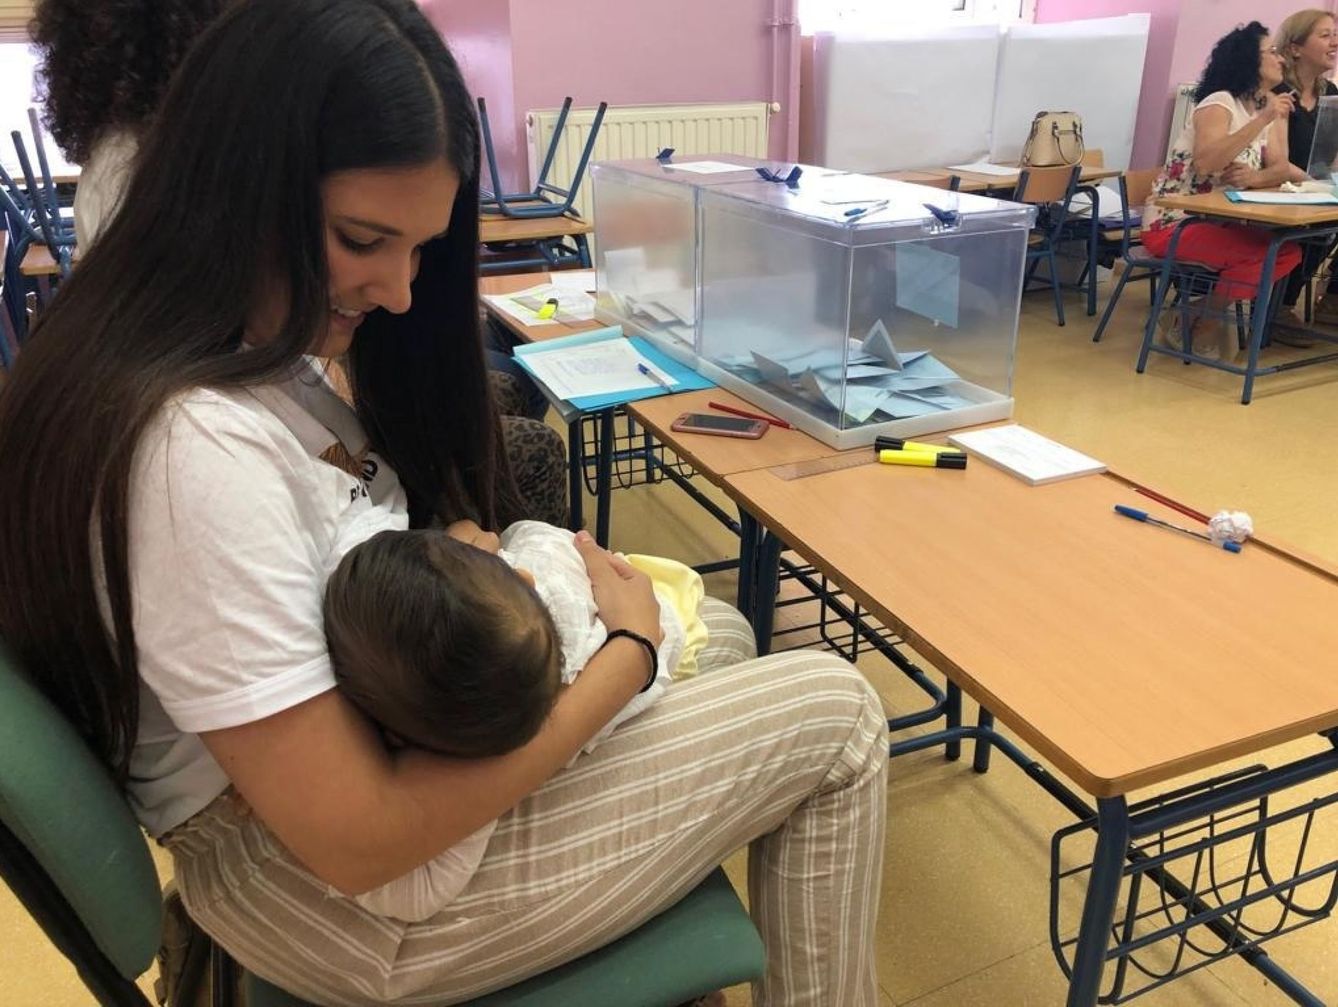 En 2019, Isabel Avilés, una vecina de El Arahal (Sevilla), se llevó a su hijo de 10 meses a la mesa electoral en la que estaba como presidenta, al no aceptar la Junta Electoral su recurso para no ser parte. (EFE)